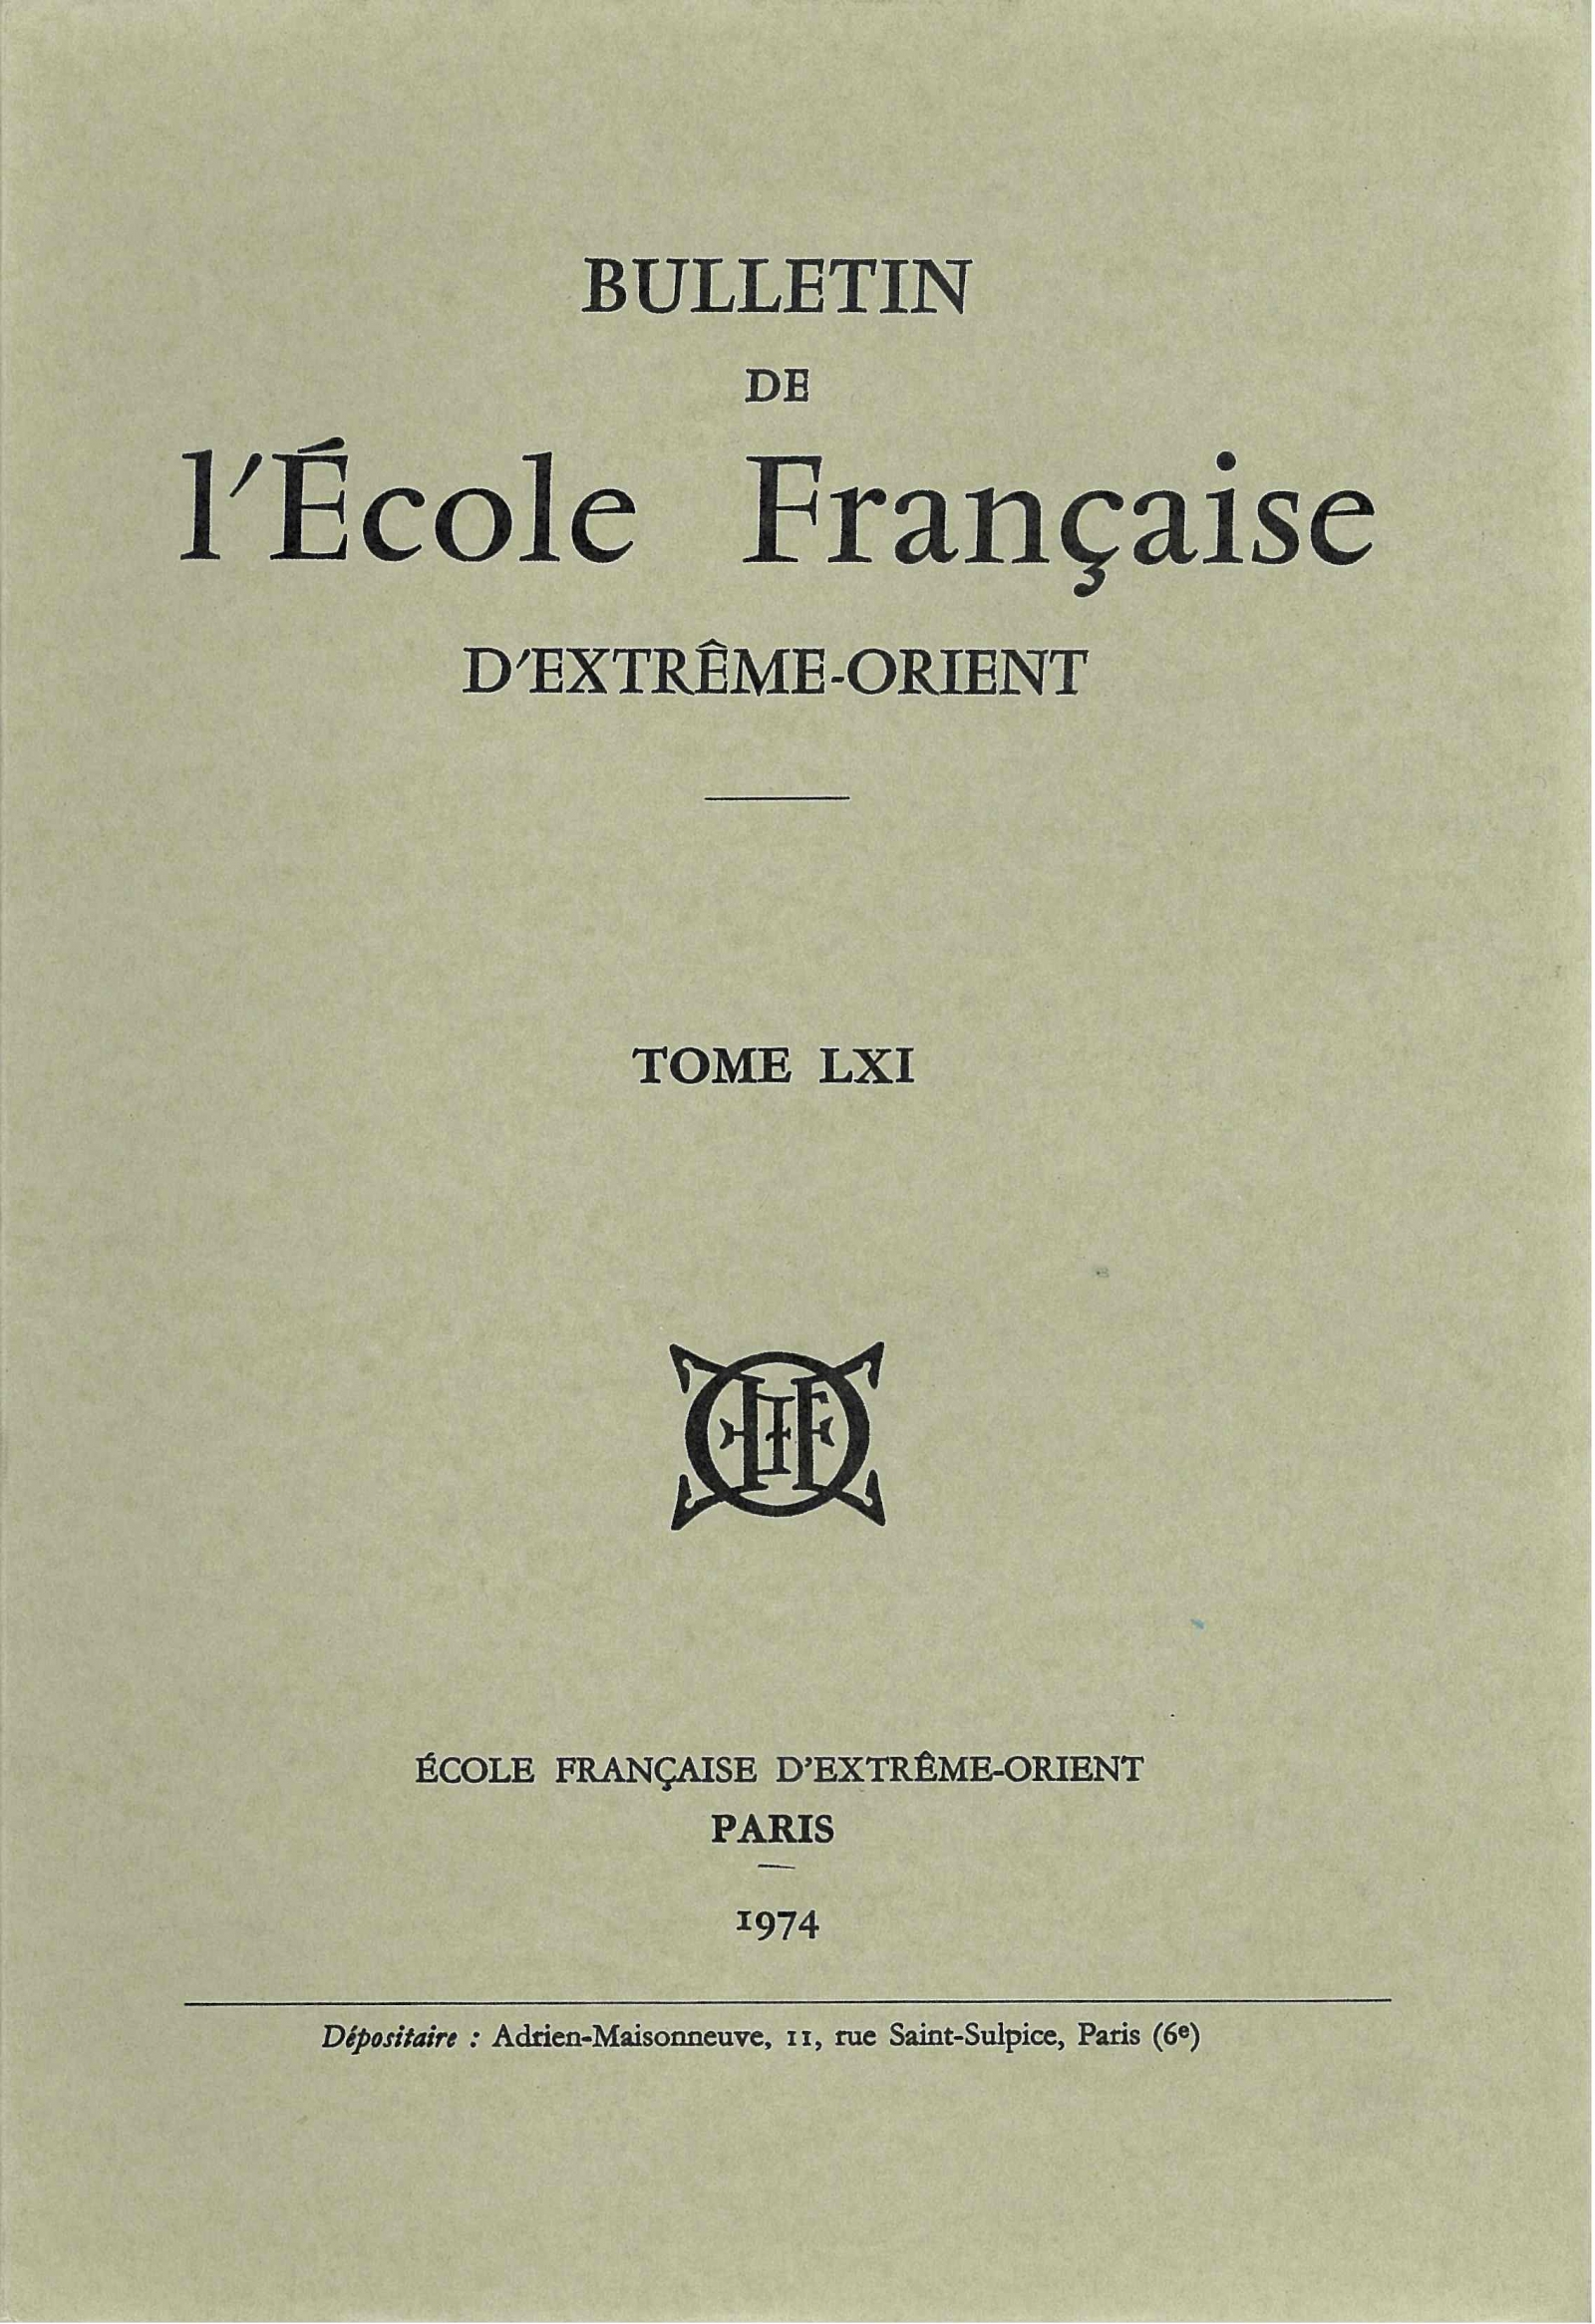 Bulletin de l'Ecole française d'Extrême-Orient 61 (1974)